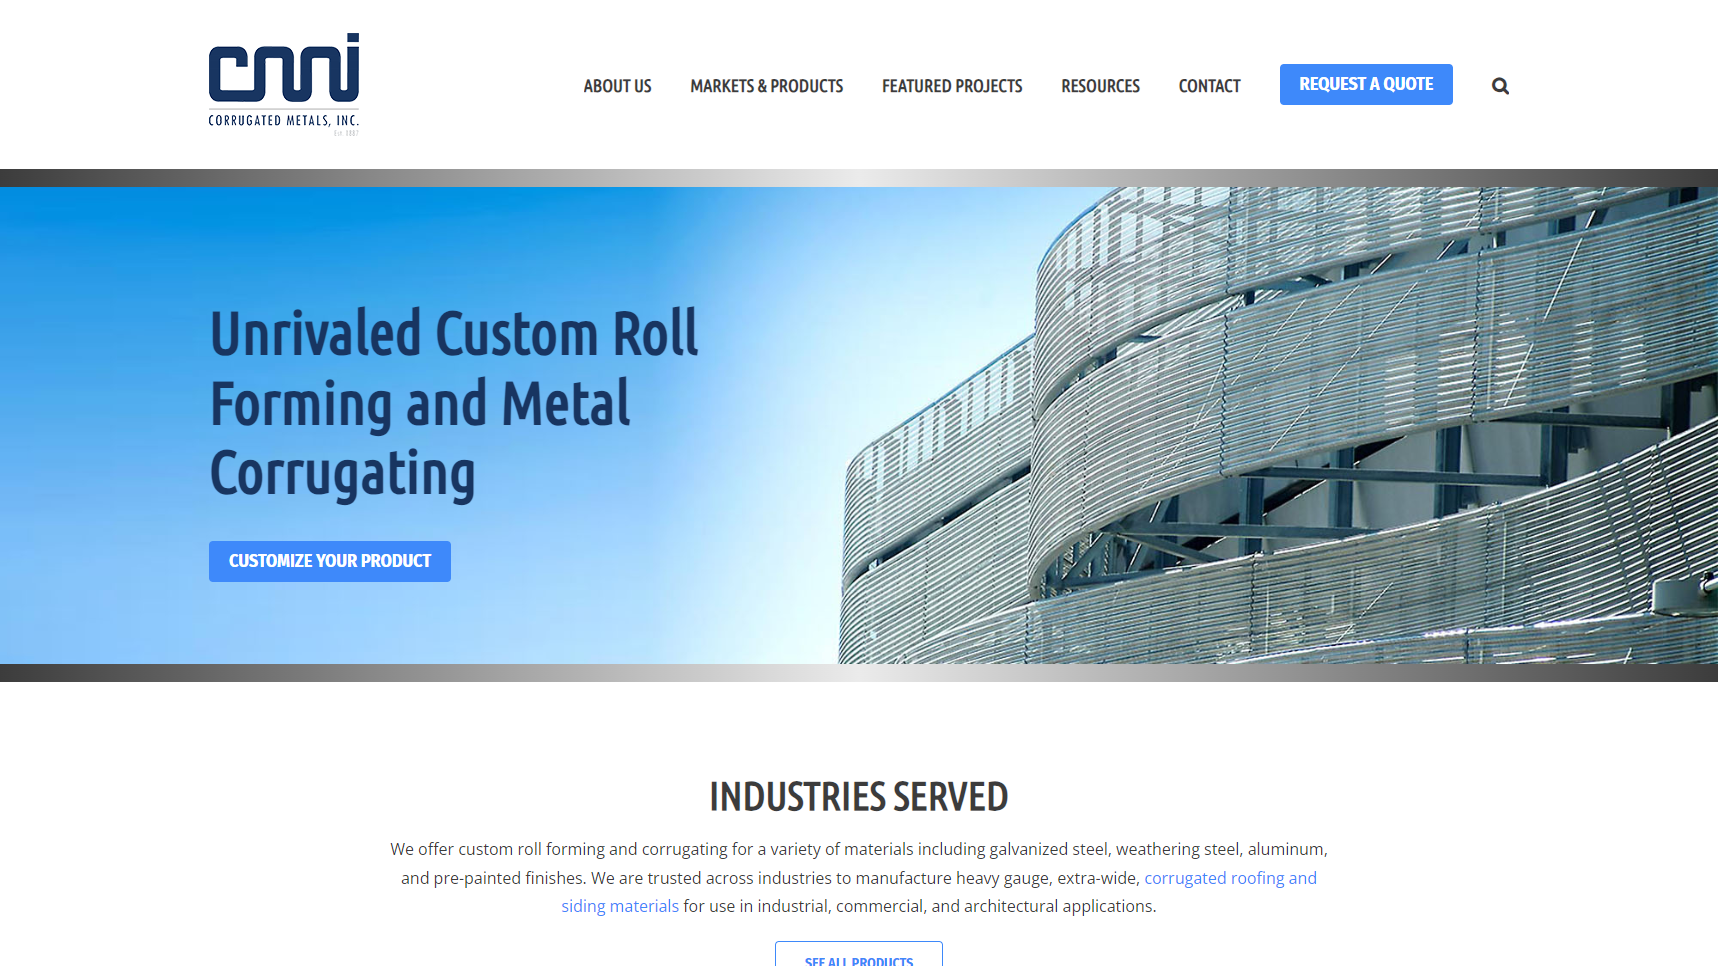 Corrugated Metals, Inc. - Corrugated Metal Sheet Manufacturer